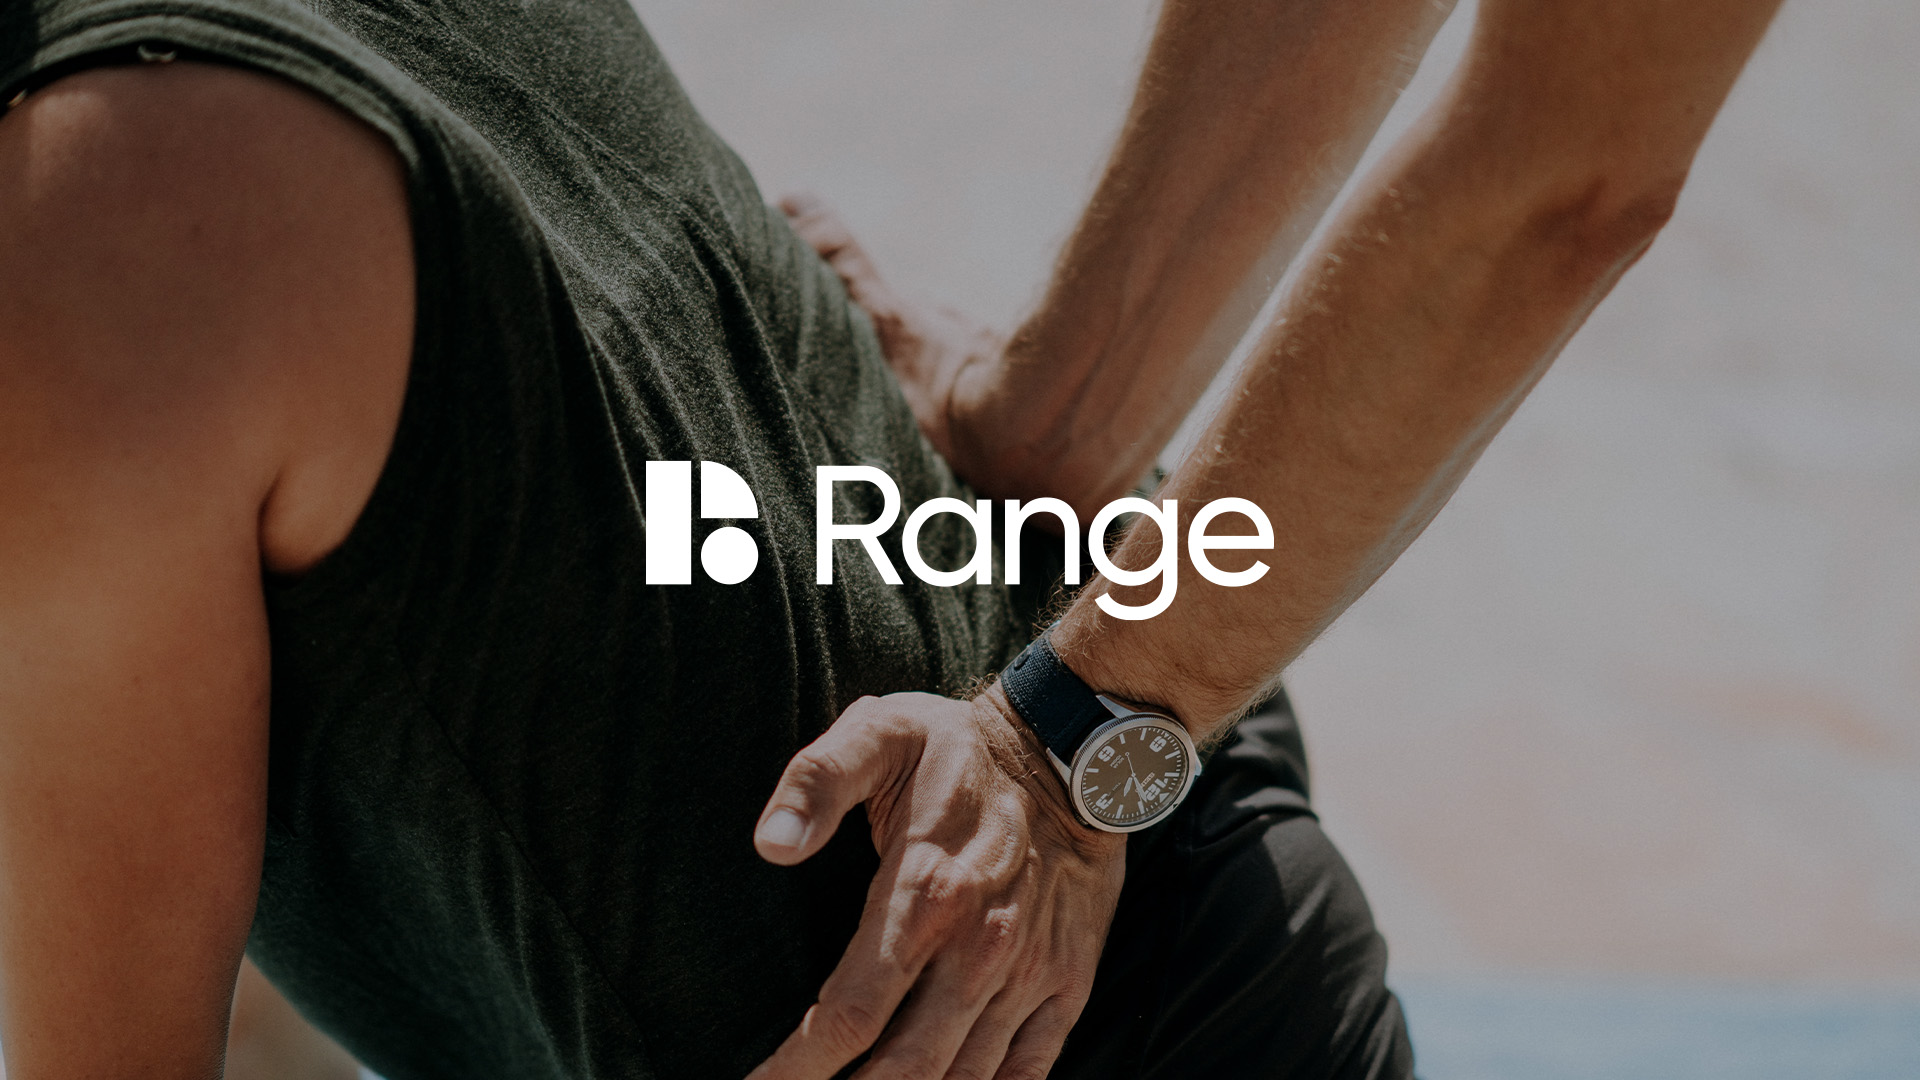 Range Physio Brand Identity Design - Logo and Image